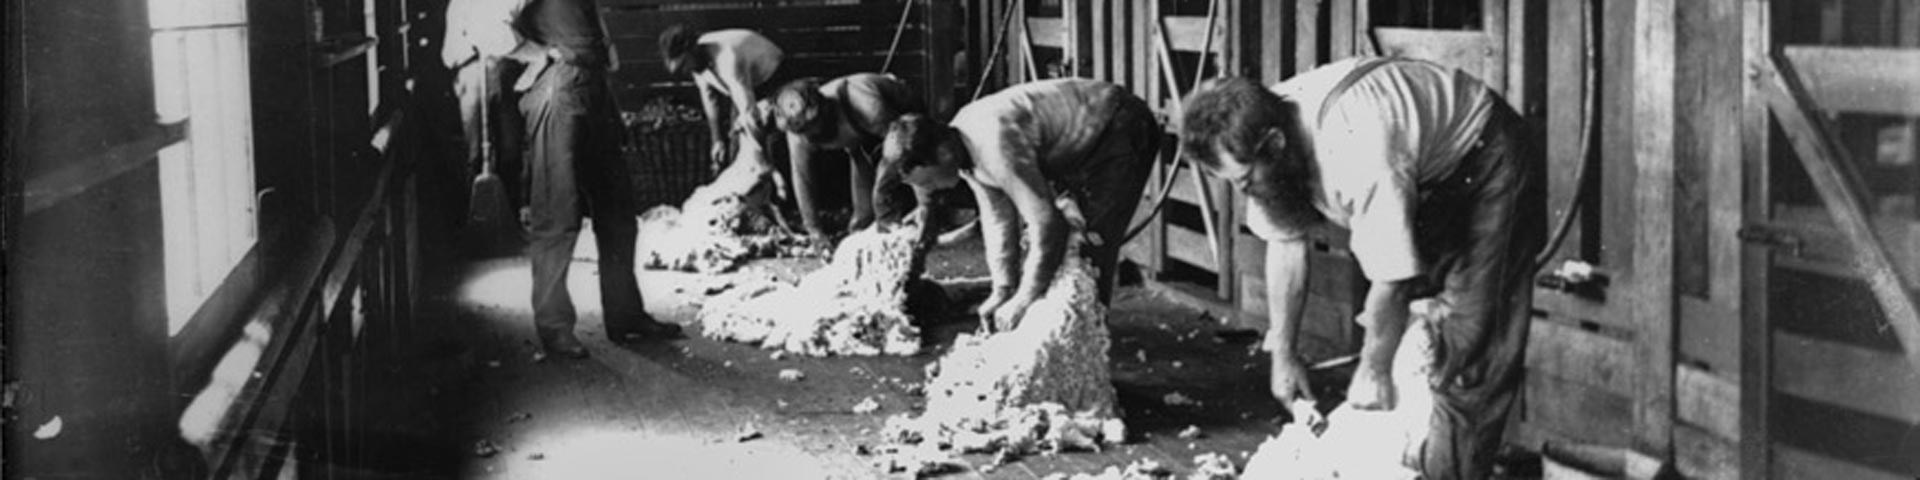 schaapscheerderskou-schapen-scheren-vroeger-1920x480